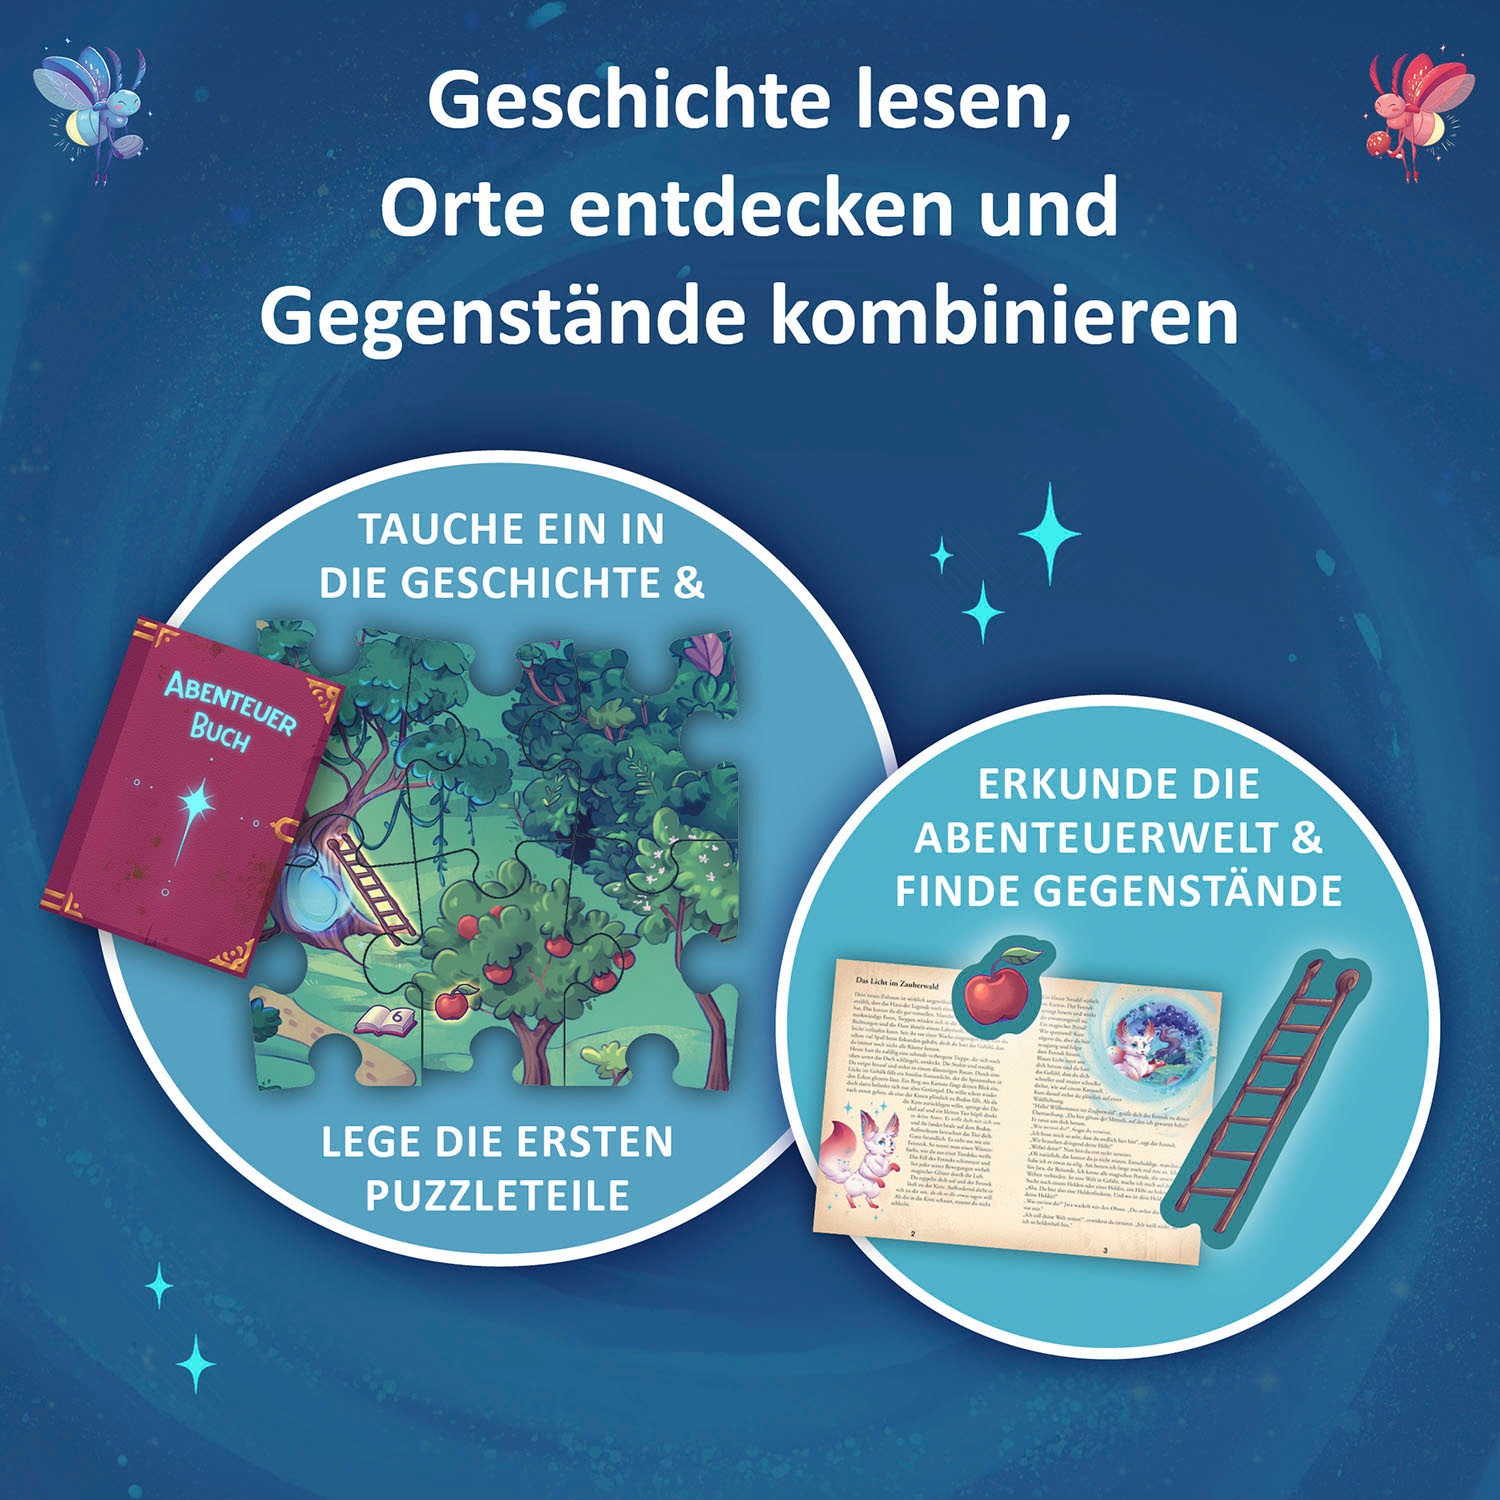 Kosmos Puzzle »Adventure Puzzle, Das Licht im Zauberwald«, Made in Germany